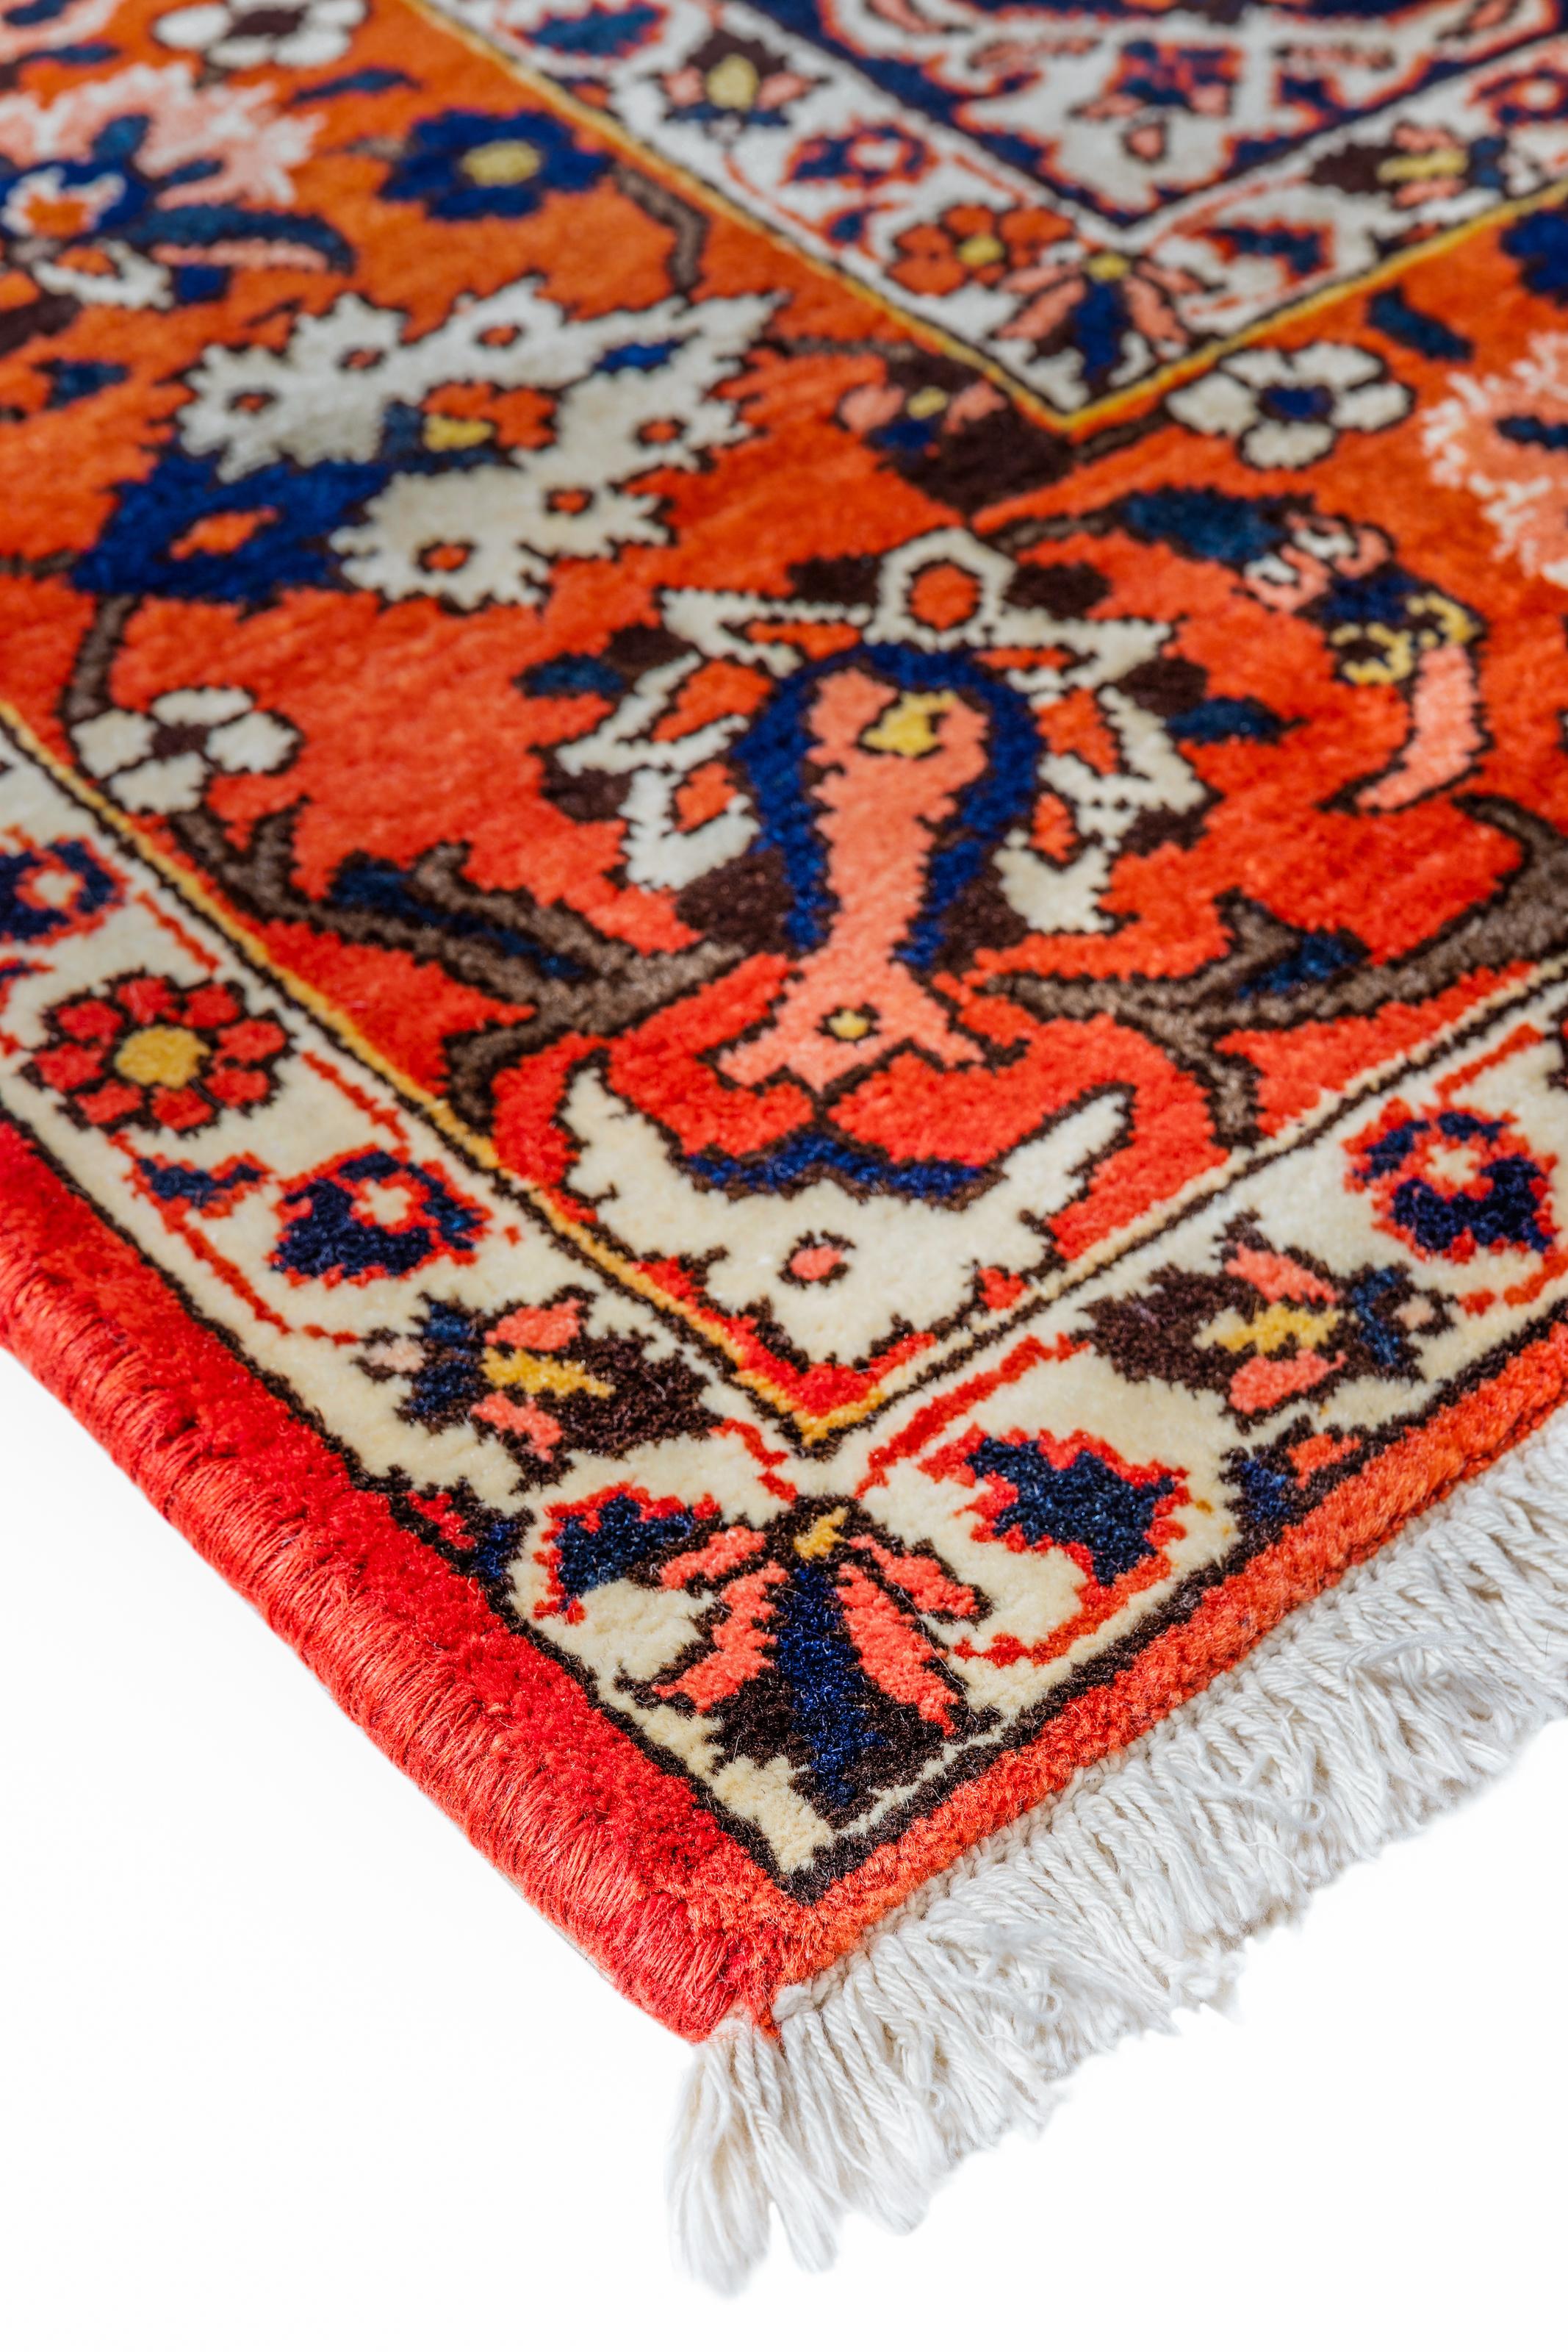 Réputés pour la richesse de leurs couleurs et l'intérêt de leurs motifs, les tapis persans sont fabriqués avec des laines et des soies entièrement naturelles. Leur beauté et l'impact qu'ils auront sur une maison sont infinis.

Dimensions exactes -